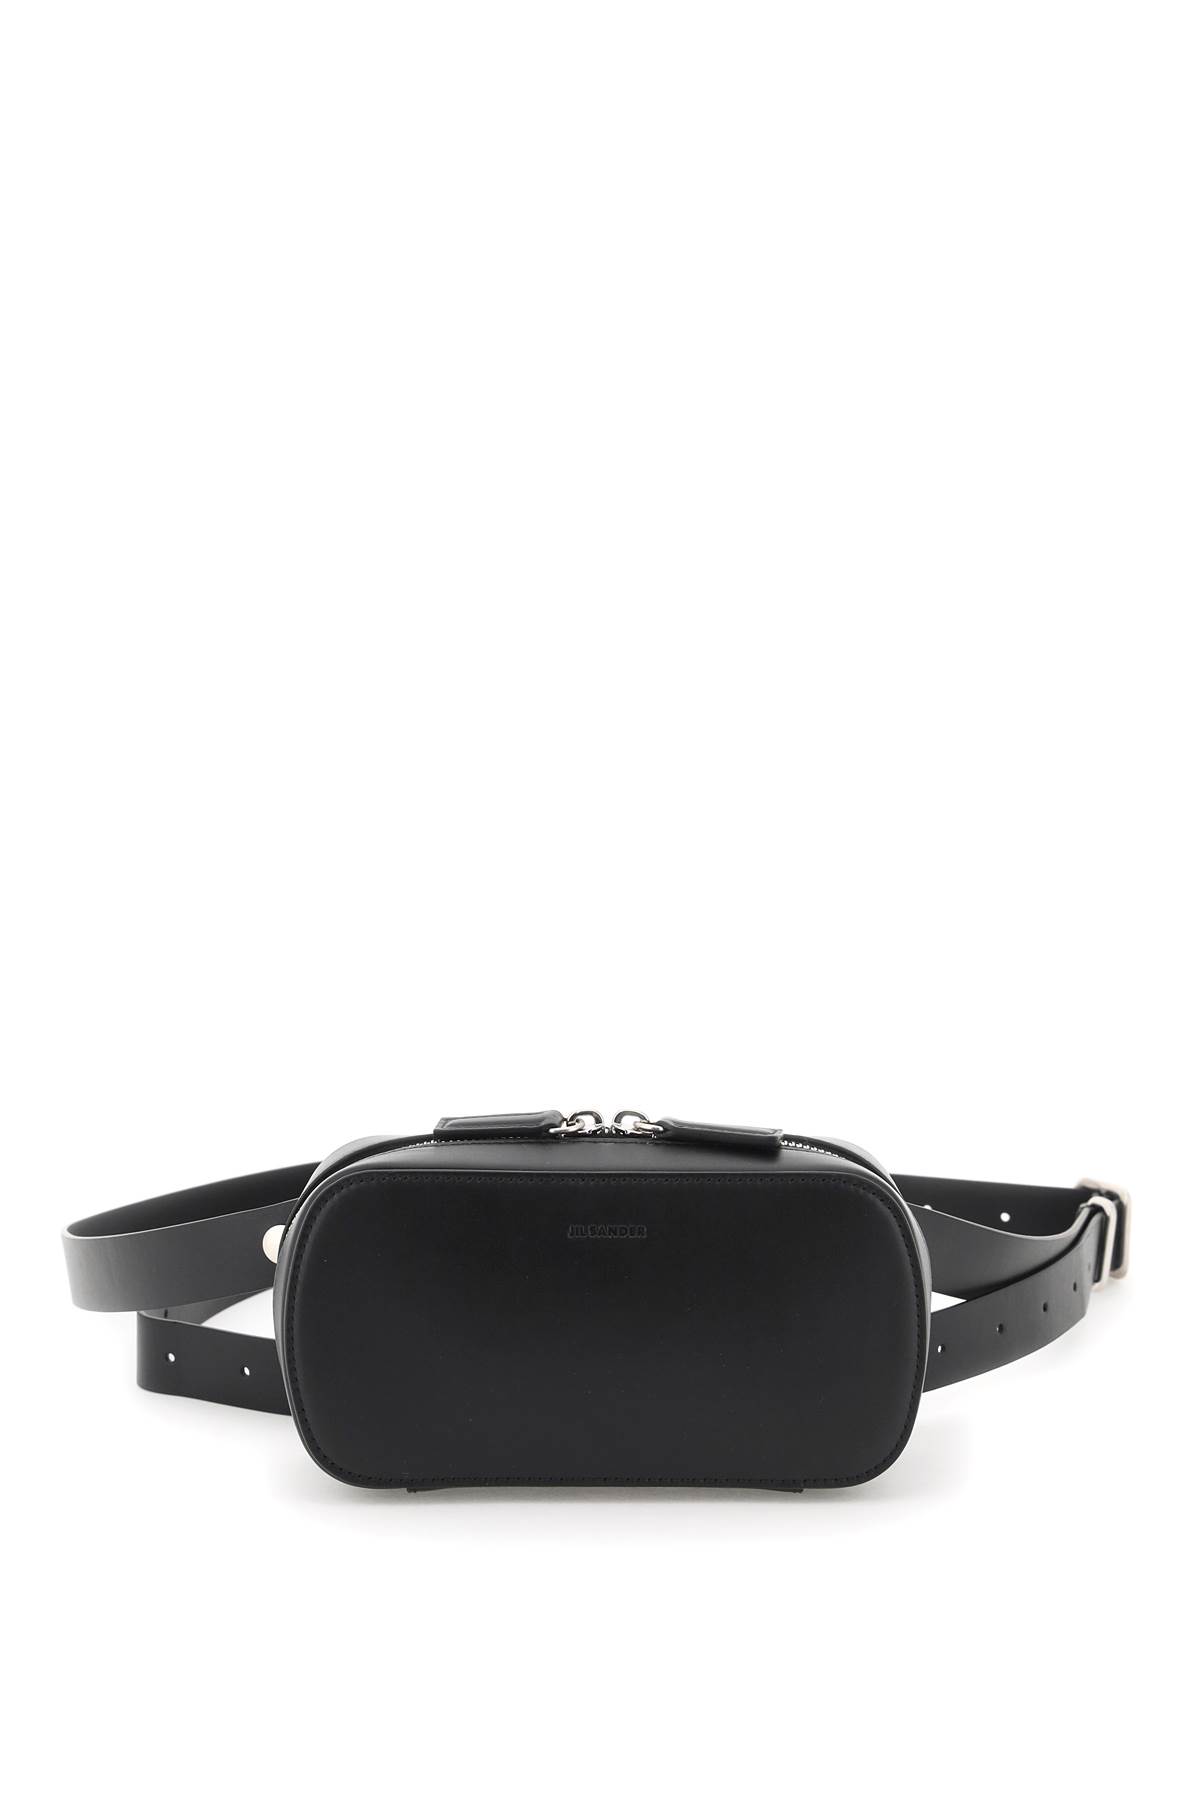 Jil Sander Leather Crossbody Bag In Black (black)